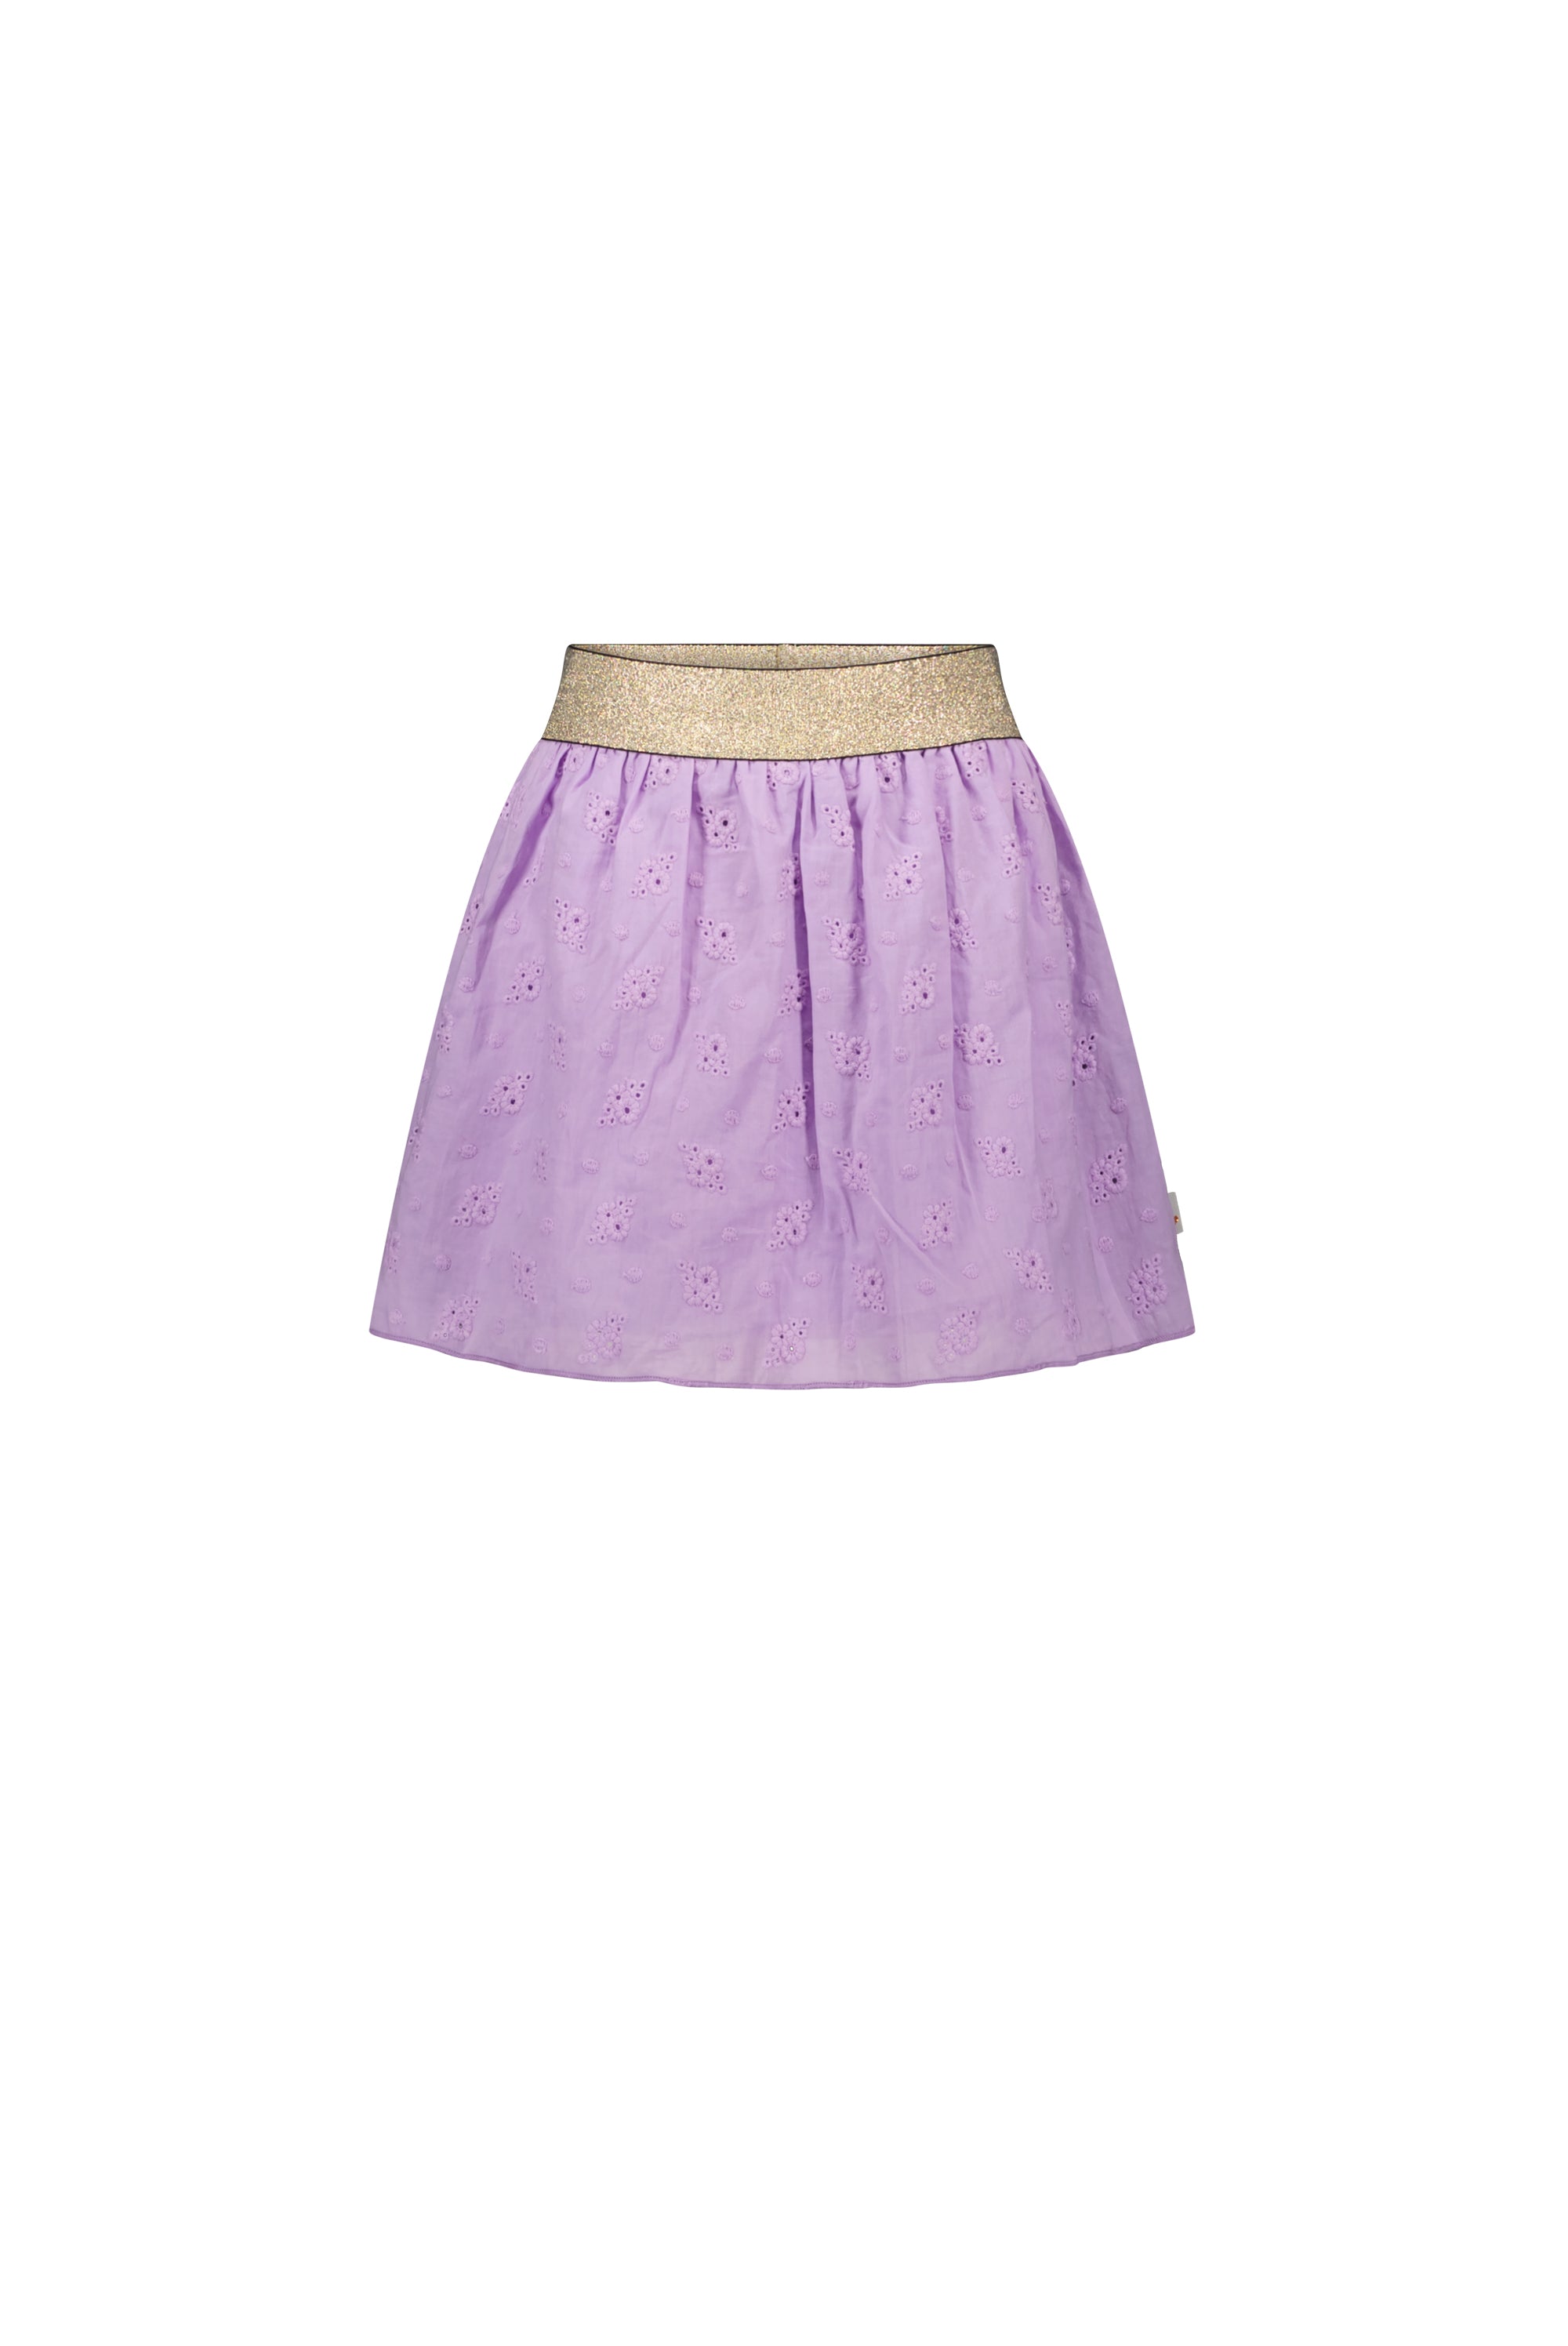 Moodstreet MT Skirt Fancy Fabric